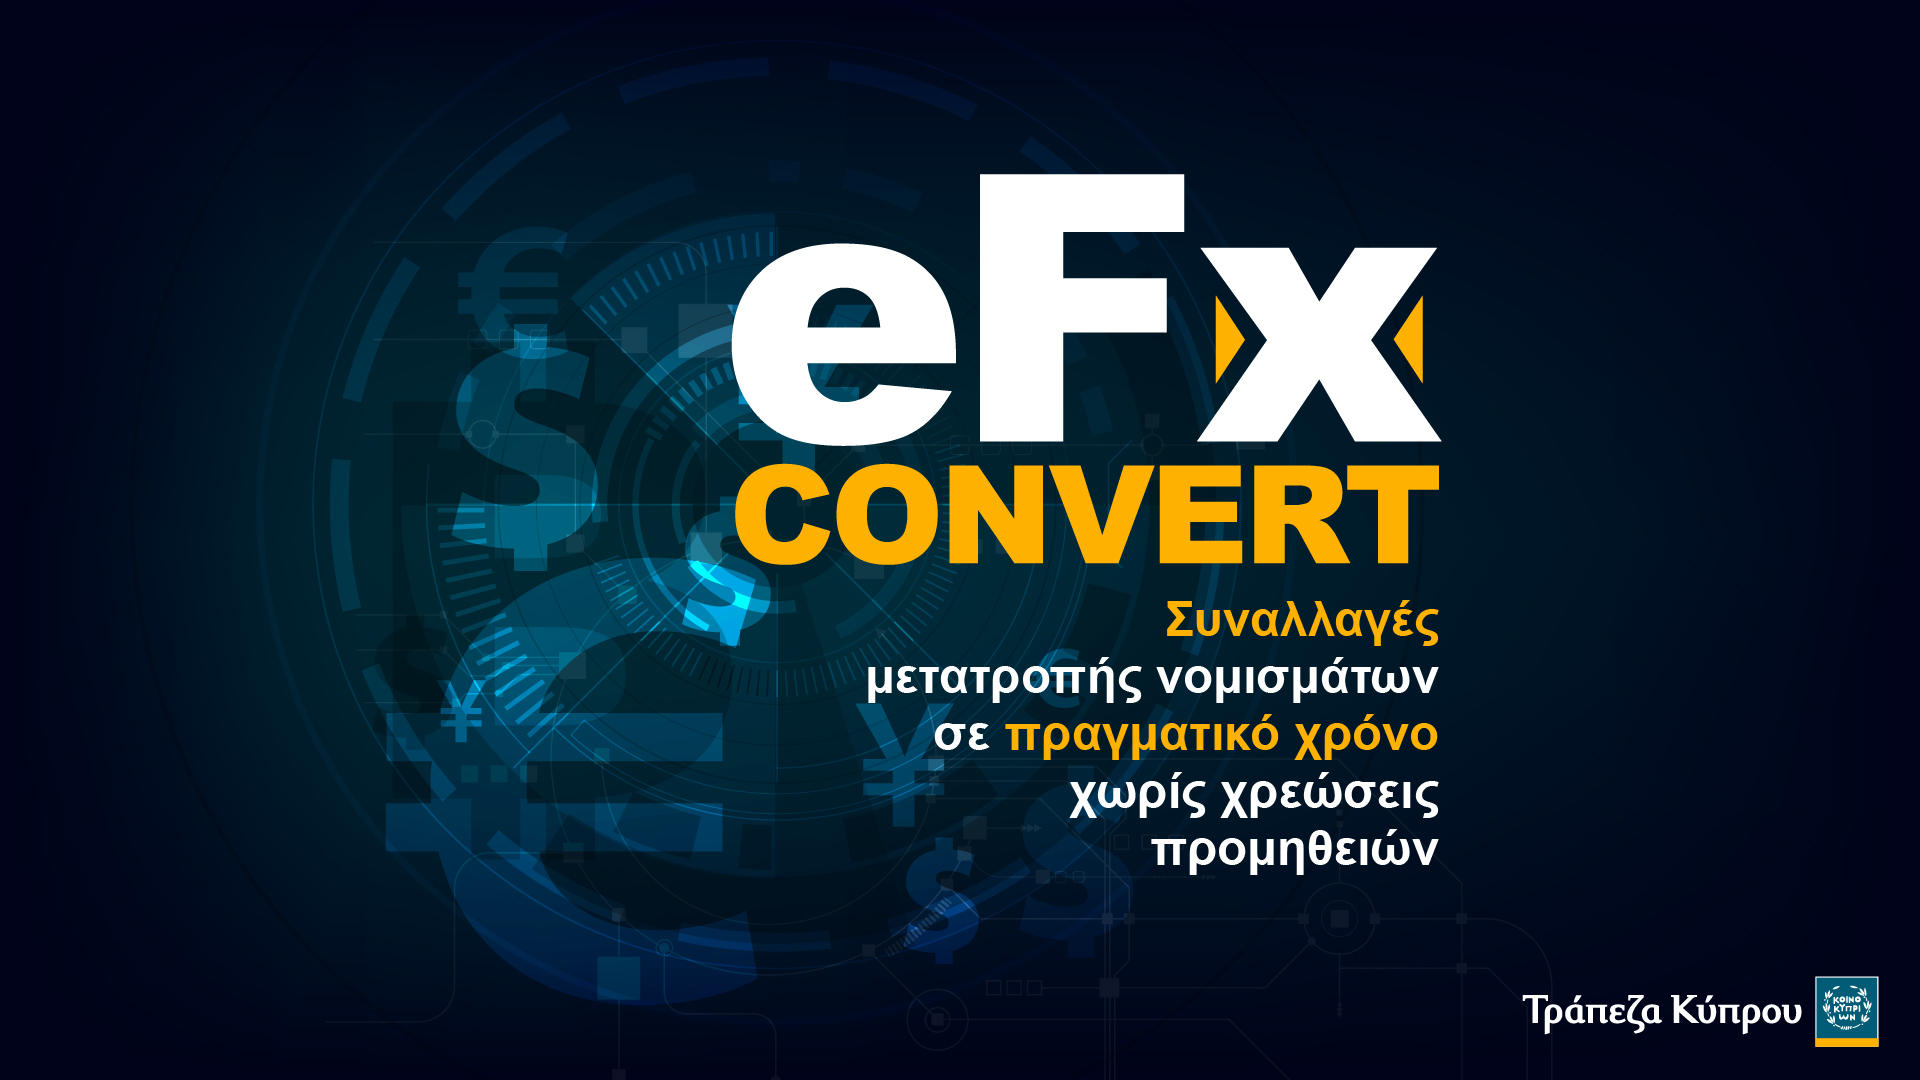 Τράπεζα Κύπρου: Η μετατροπή νομισμάτων στη νέα eFx convert εποχή